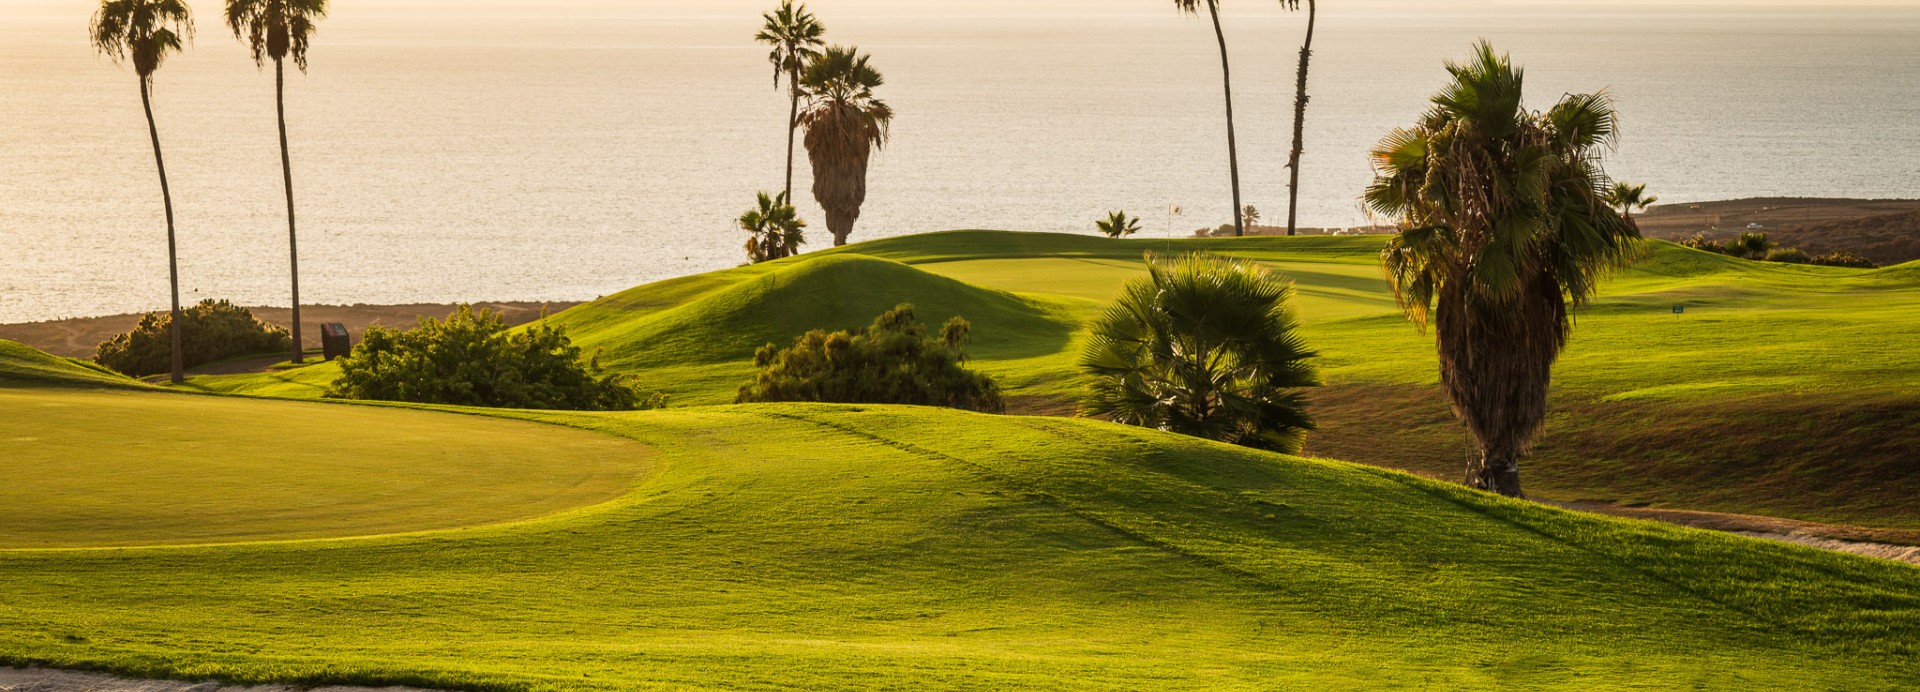 Costa Adeje Golf  | Golfové zájezdy, golfová dovolená, luxusní golf